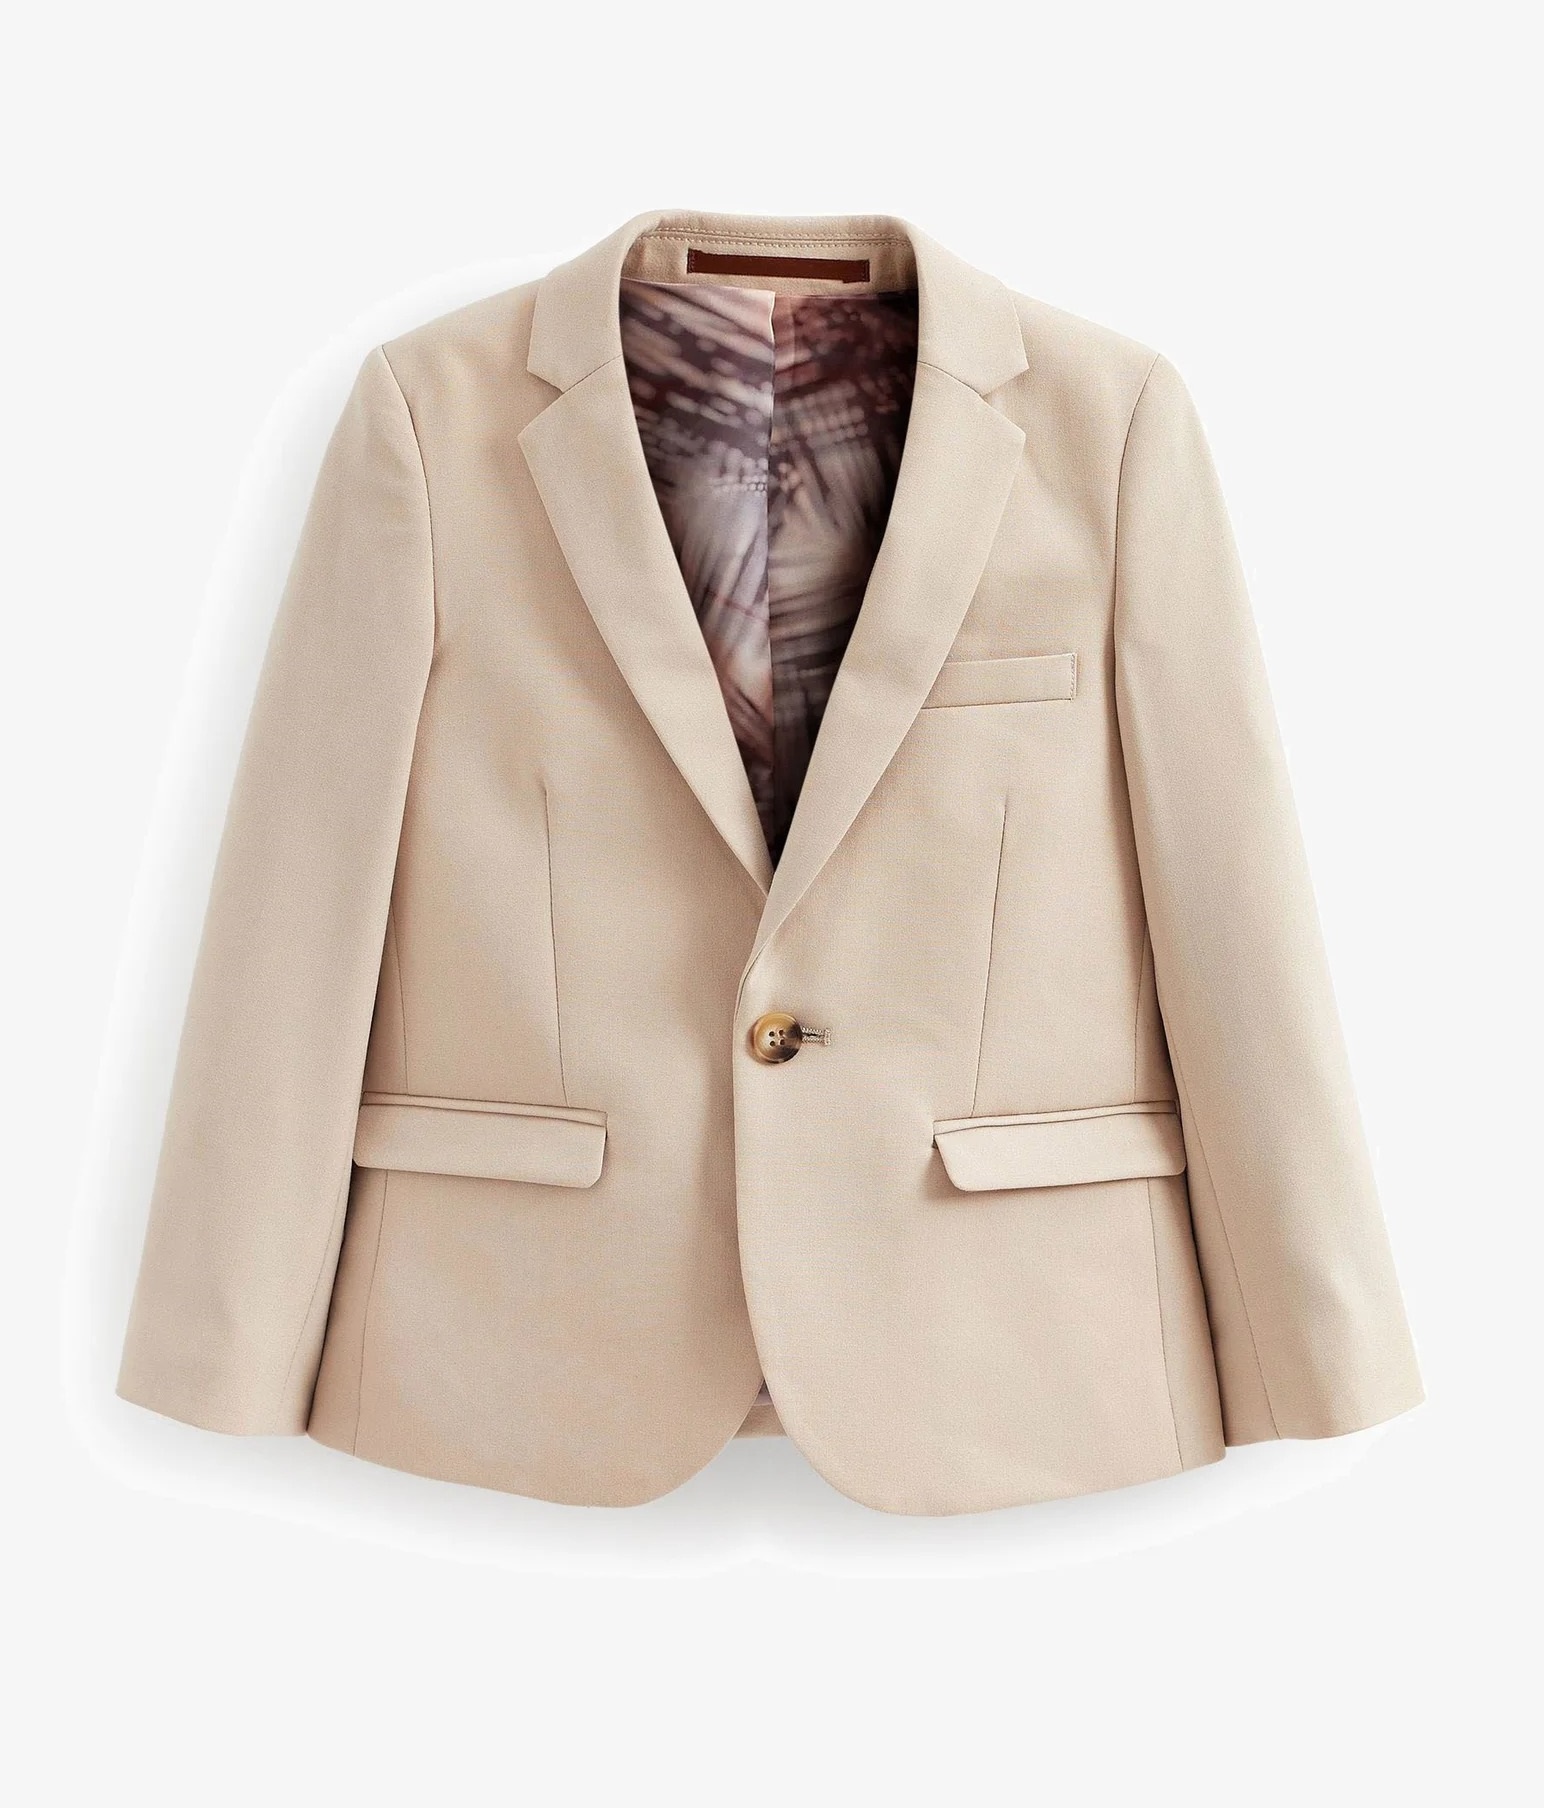 Пиджак Next Standard Blazer, бежевый женский двубортный блейзер классический пиджак 2021 верхний размер пиджак с металлическими кнопками в форме льва s 4xl